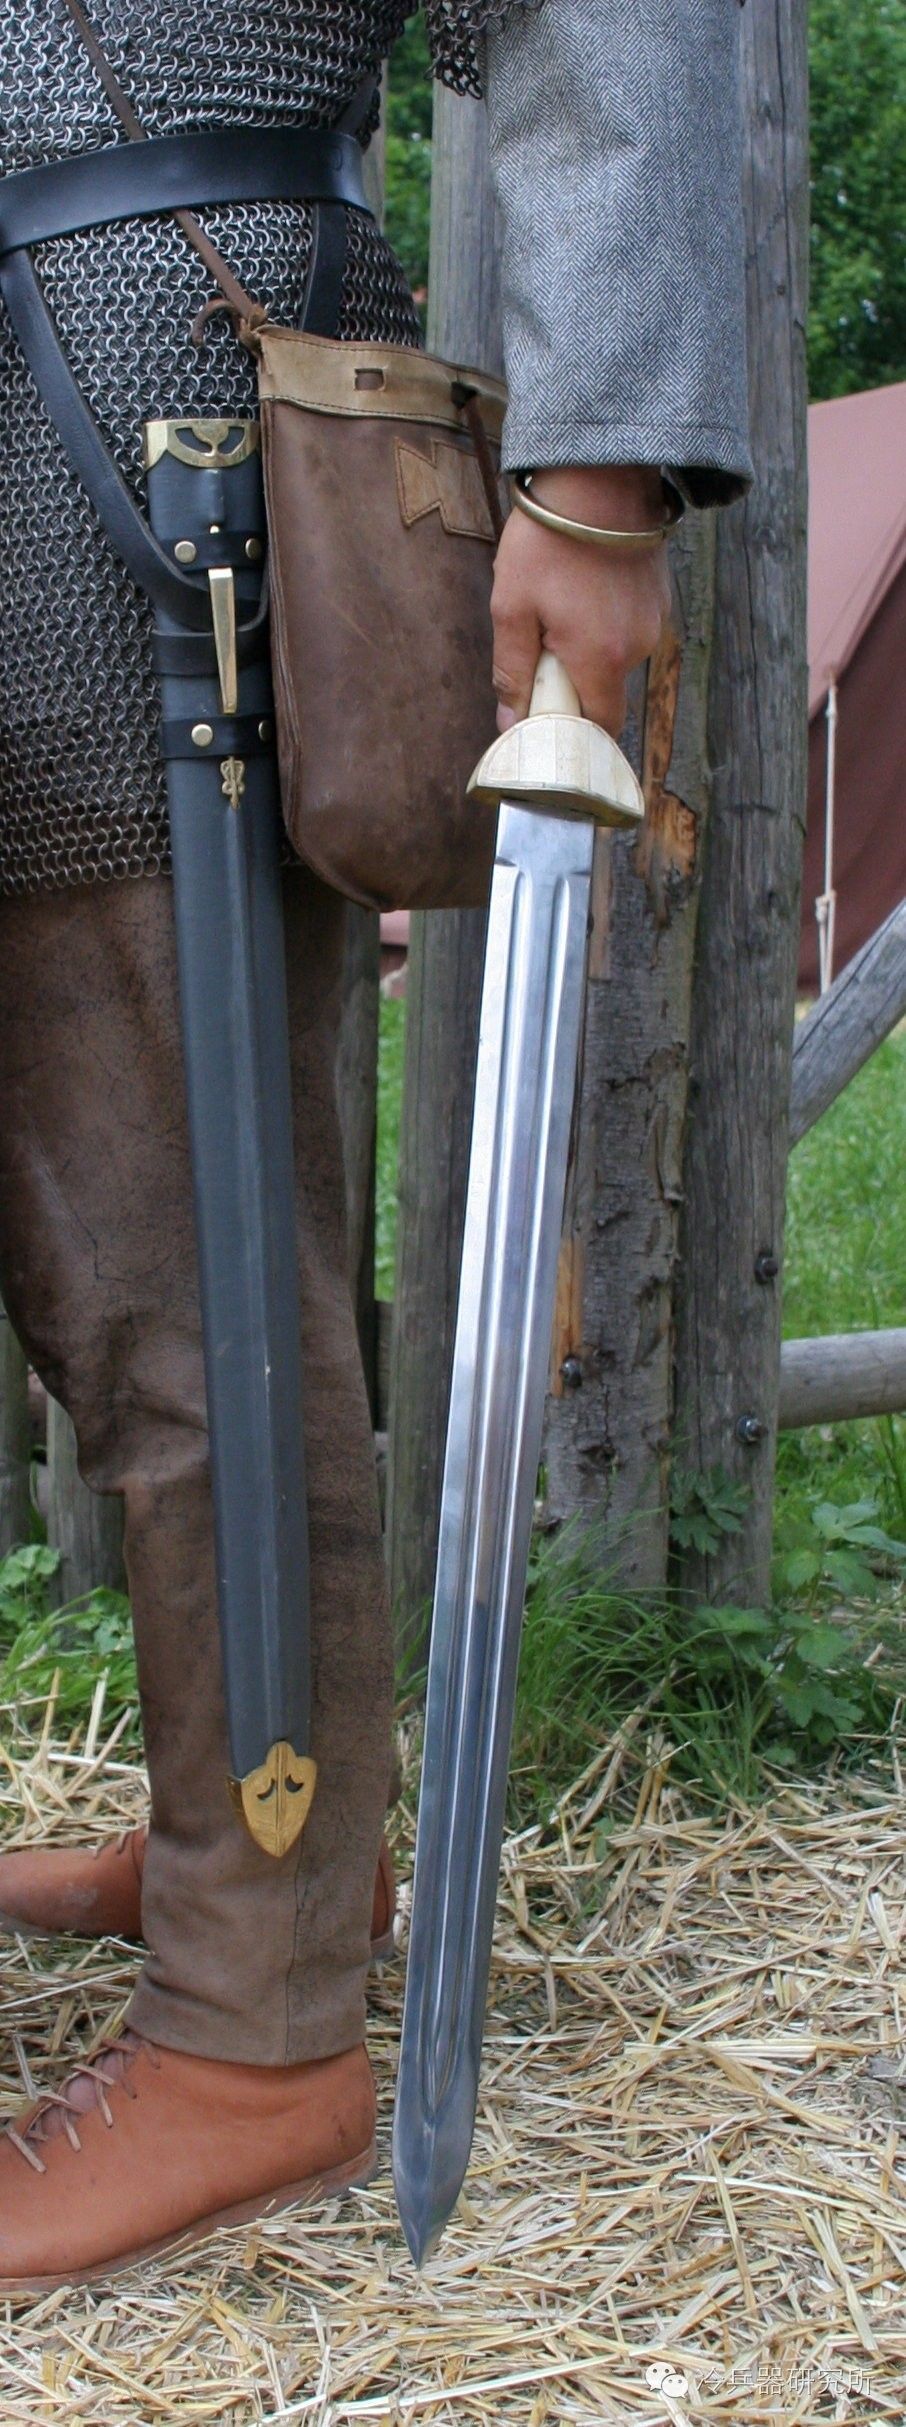 罗马帝国的利剑与长盾：解密古罗马步兵军团装备